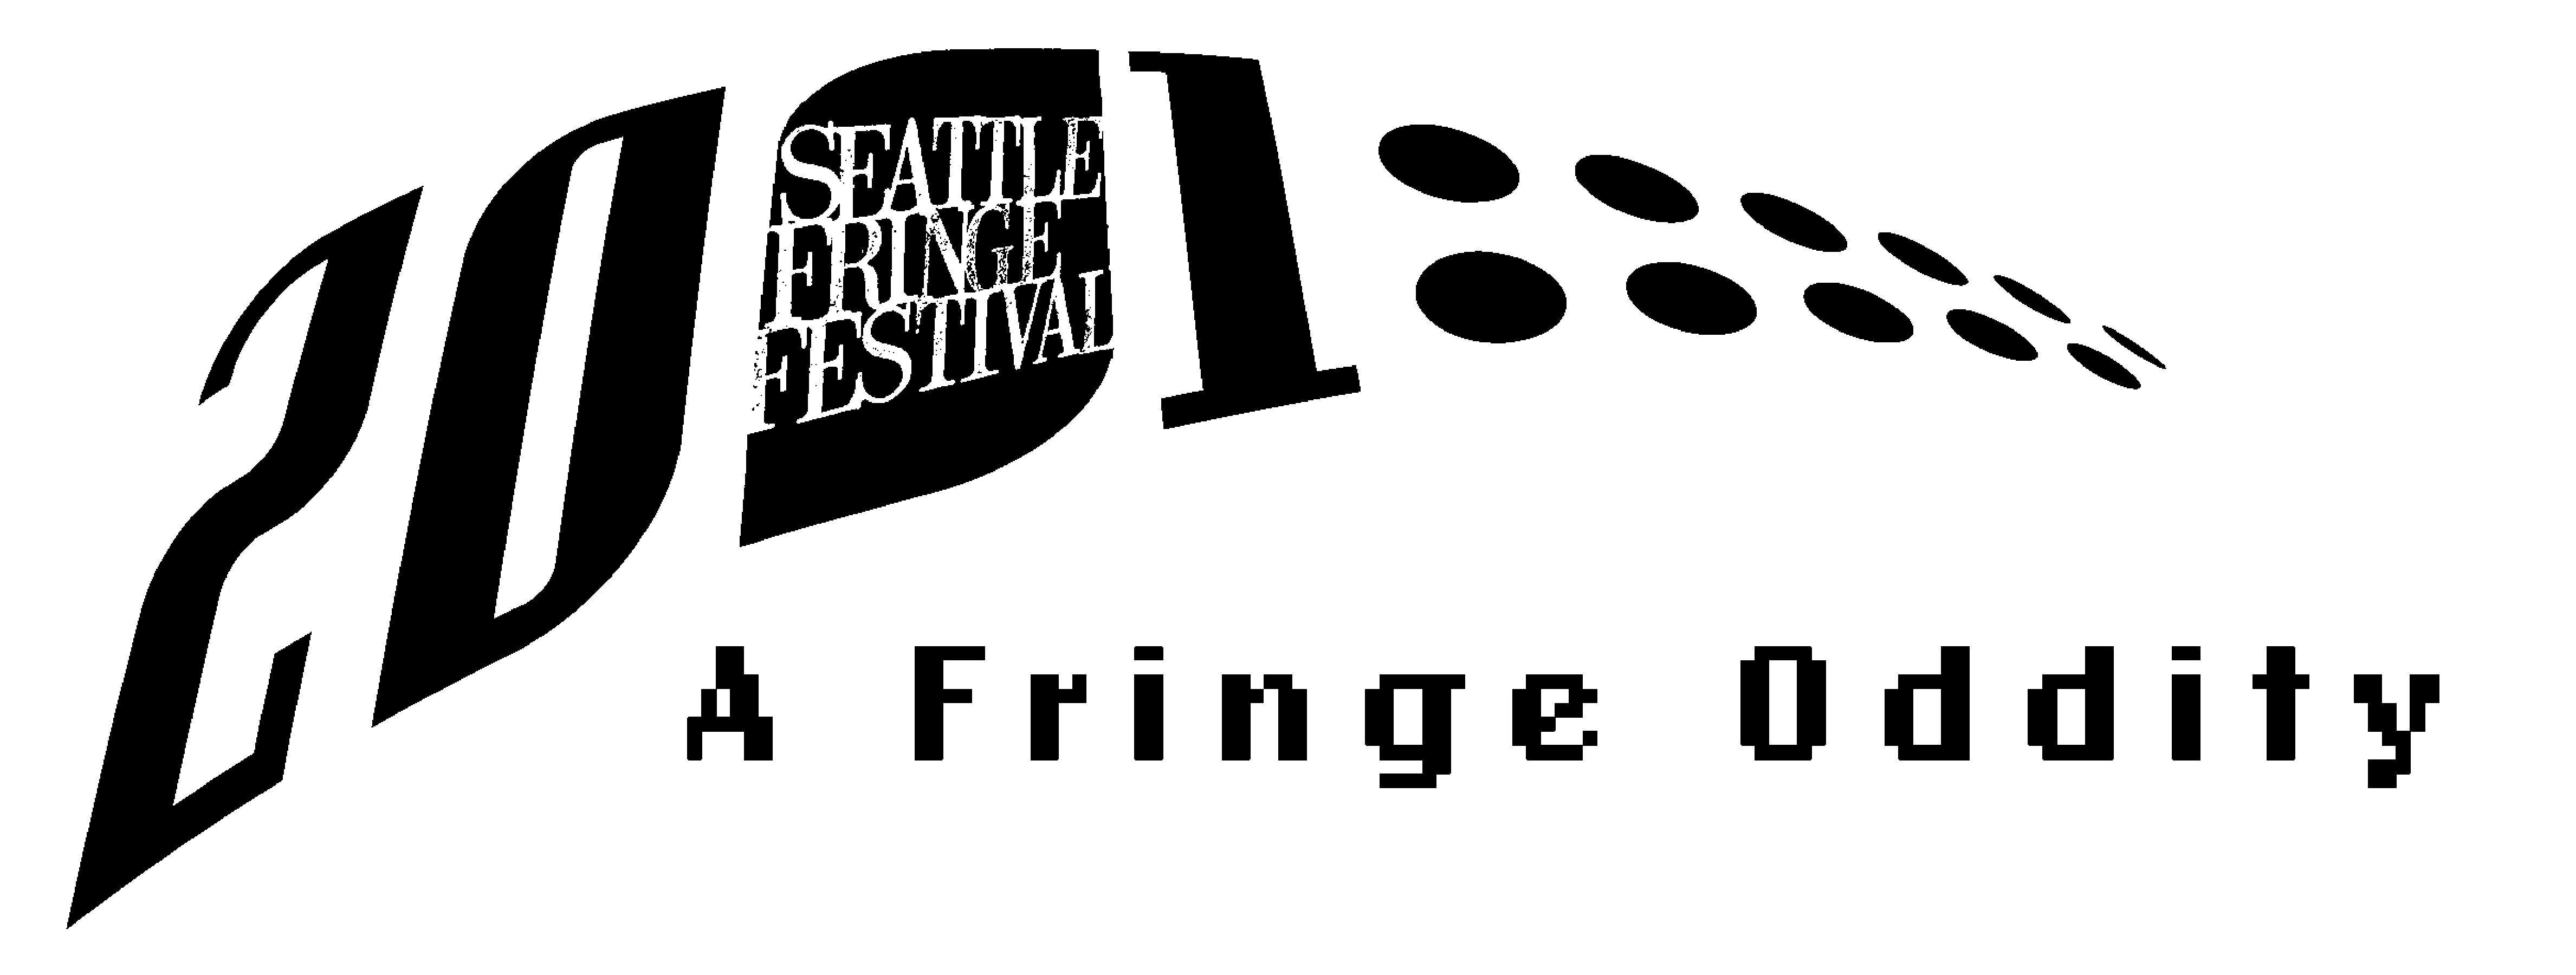 2001 Fringe logo